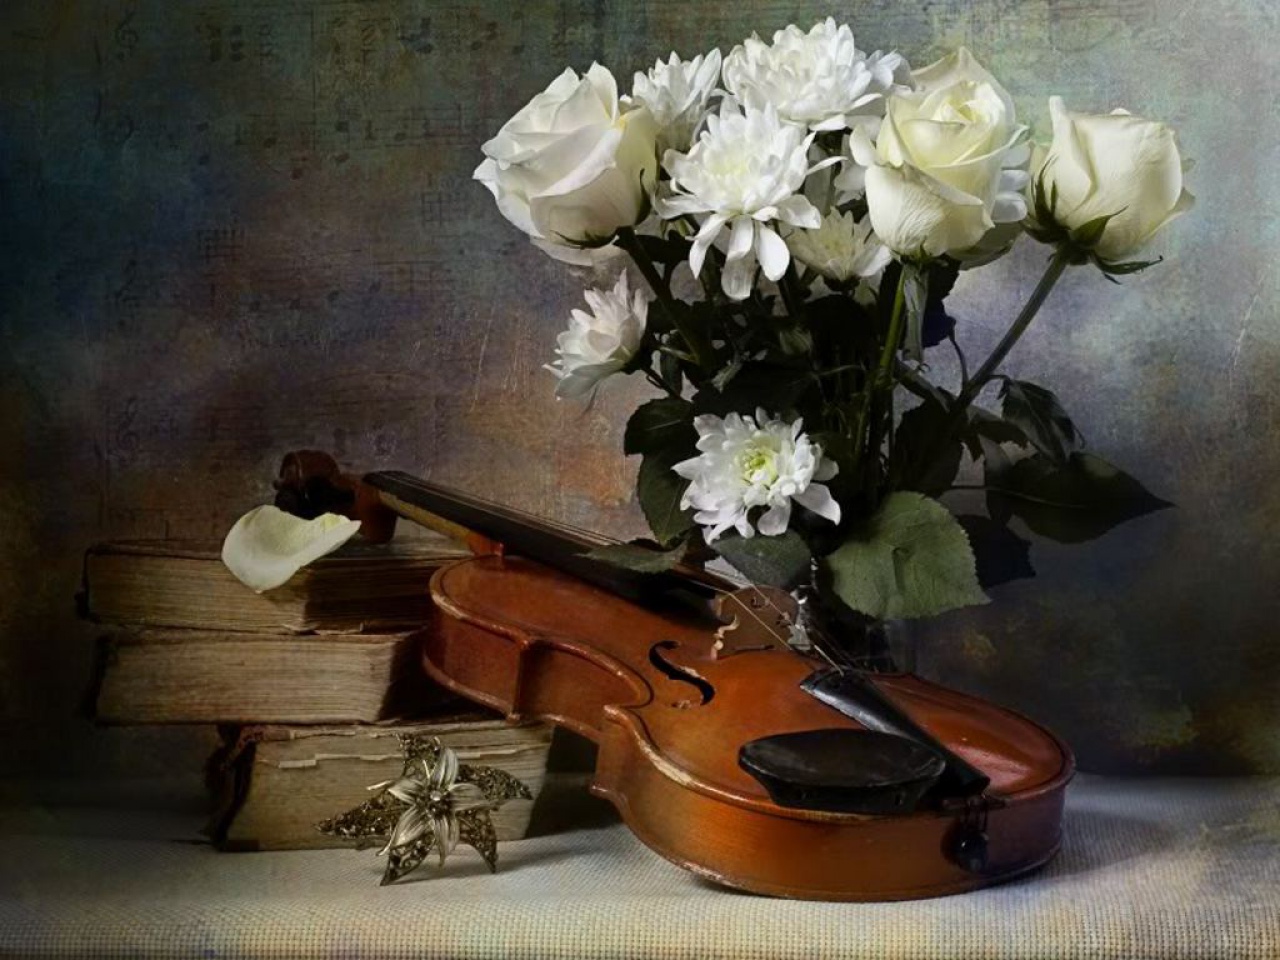 Песенная поэзия. Натюрморт. Натюрморт с музыкальными инструментами. Натюрморт со скрипкой. Скрипка с цветами.